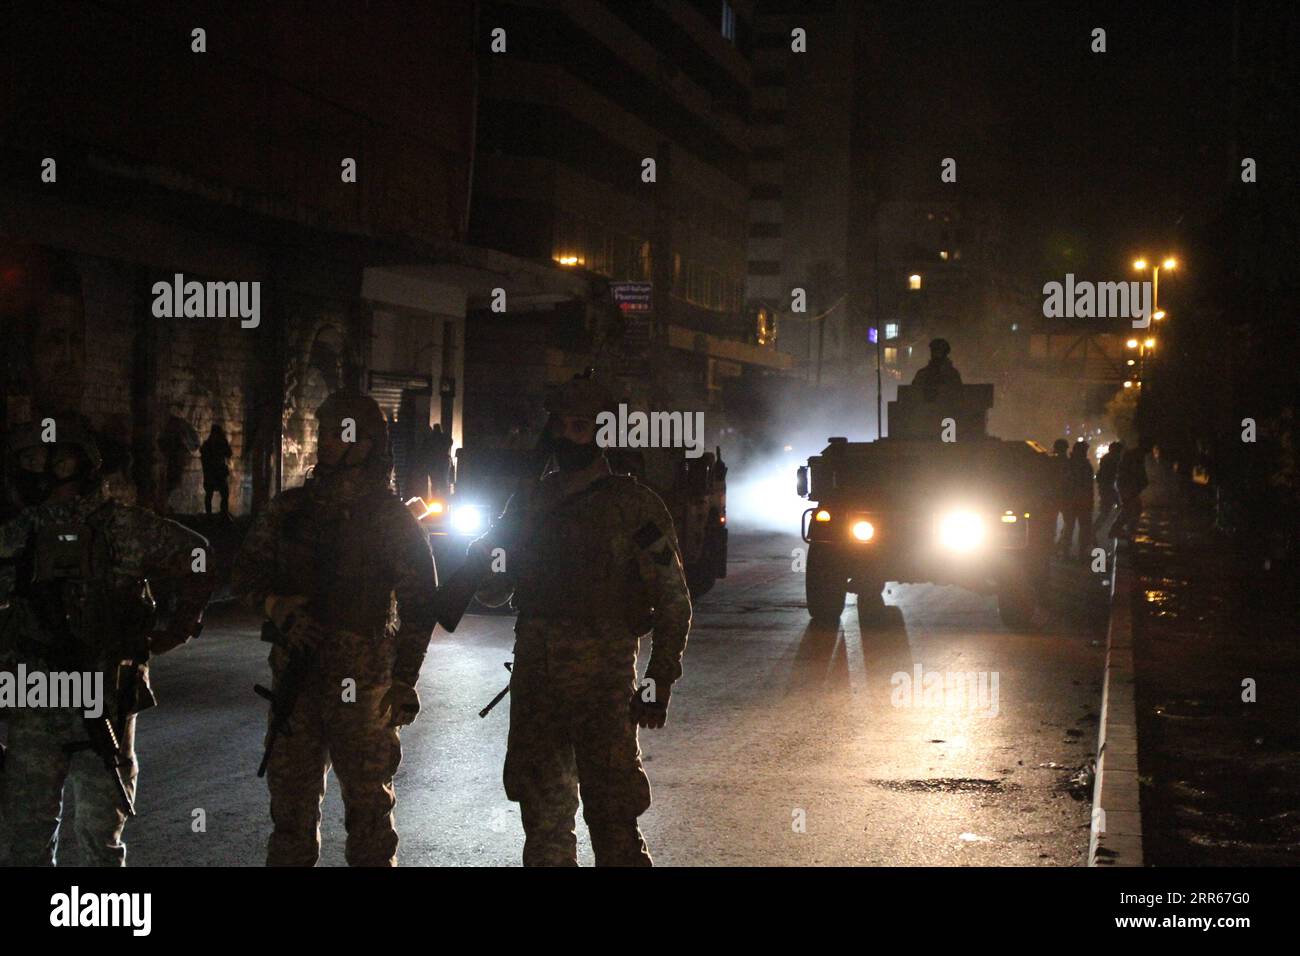 210129 -- TRIPOLI LIBANON, 29. Januar 2021 -- Mitglieder der libanesischen Armee stehen am 29. Januar 2021 auf einer Straße in Tripoli, Nordlibanon, Wache. Die libanesische Armee gab am Freitag bekannt, dass sie fünf Personen verhaftet habe, die am Brand des Gebäudes der Gemeinde eine Nacht zuvor in Tripoli während gewalttätiger Protestkämpfe zwischen Bürgern und Sicherheitskräften beteiligt waren, berichtete die nationale Nachrichtenagentur. Foto von /Xinhua LEBANON-TRIPOLI-GEWALTTÄTIGE ZUSAMMENSTÖSSE-NACHWIRKUNGEN Khaled PUBLICATIONxNOTxINxCHN Stockfoto